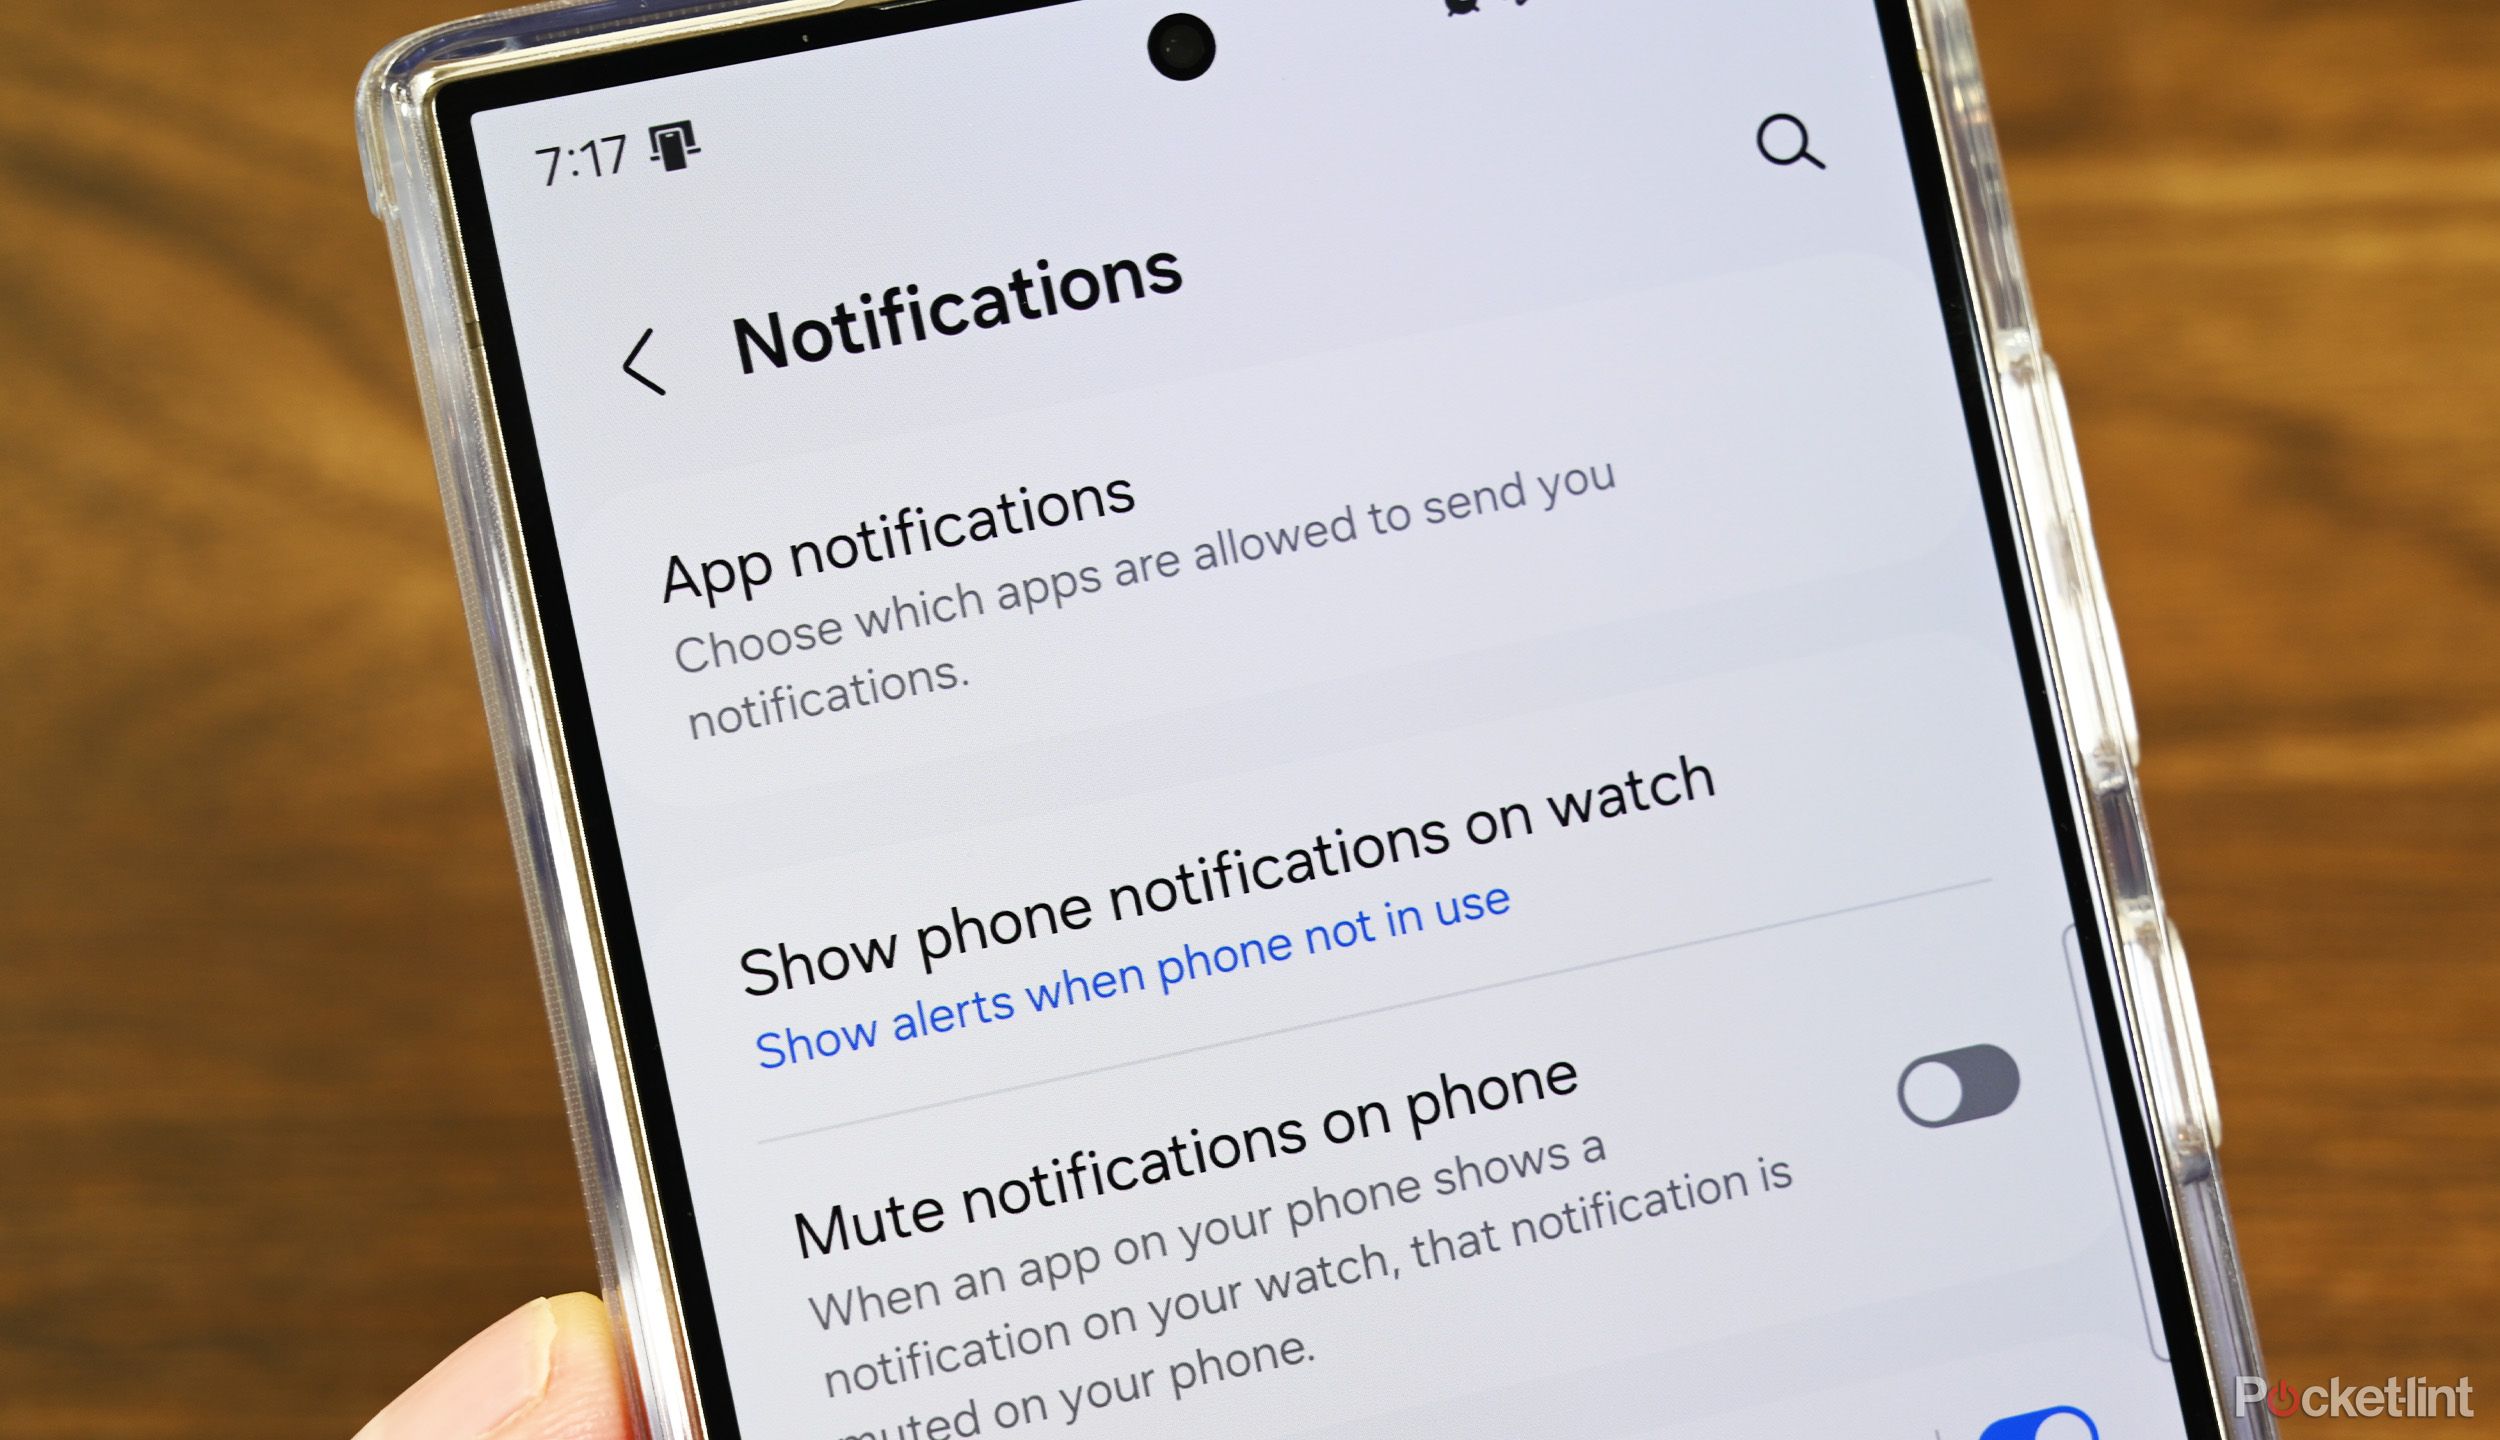 App notifications on Wear OS